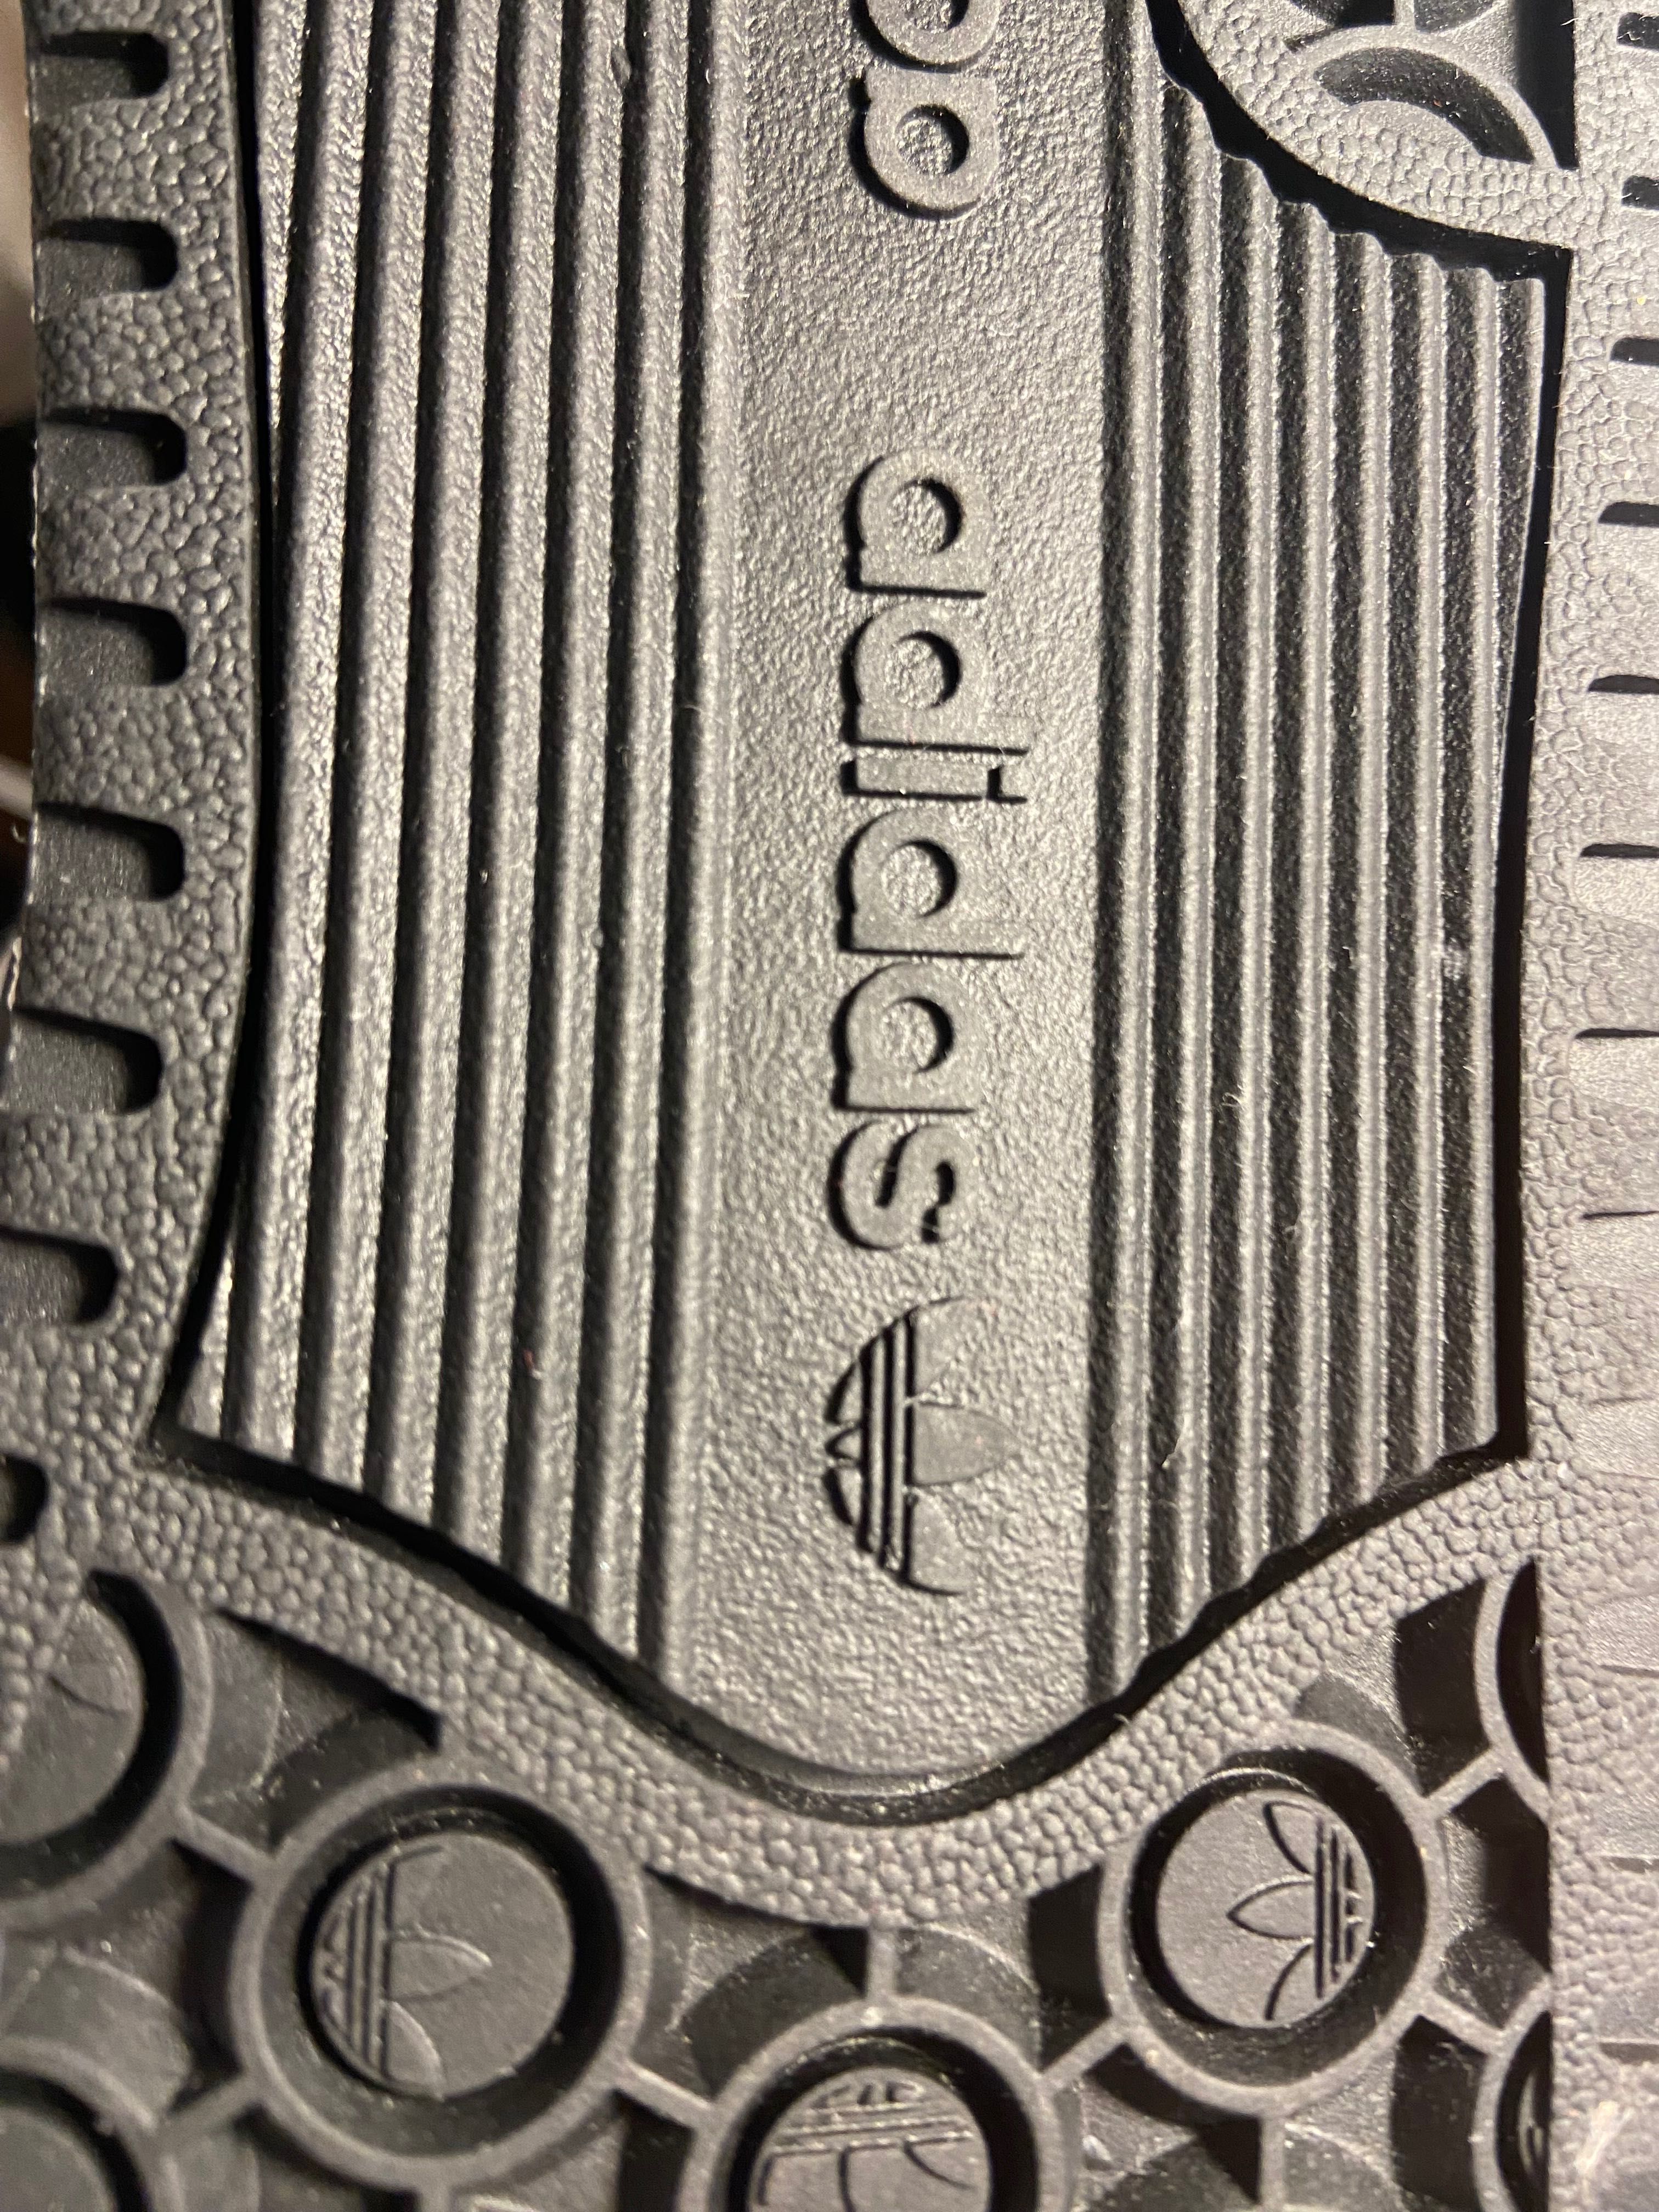 Adidasi adidas Forum mid(ne purtati)+perechei sosete adidas albe